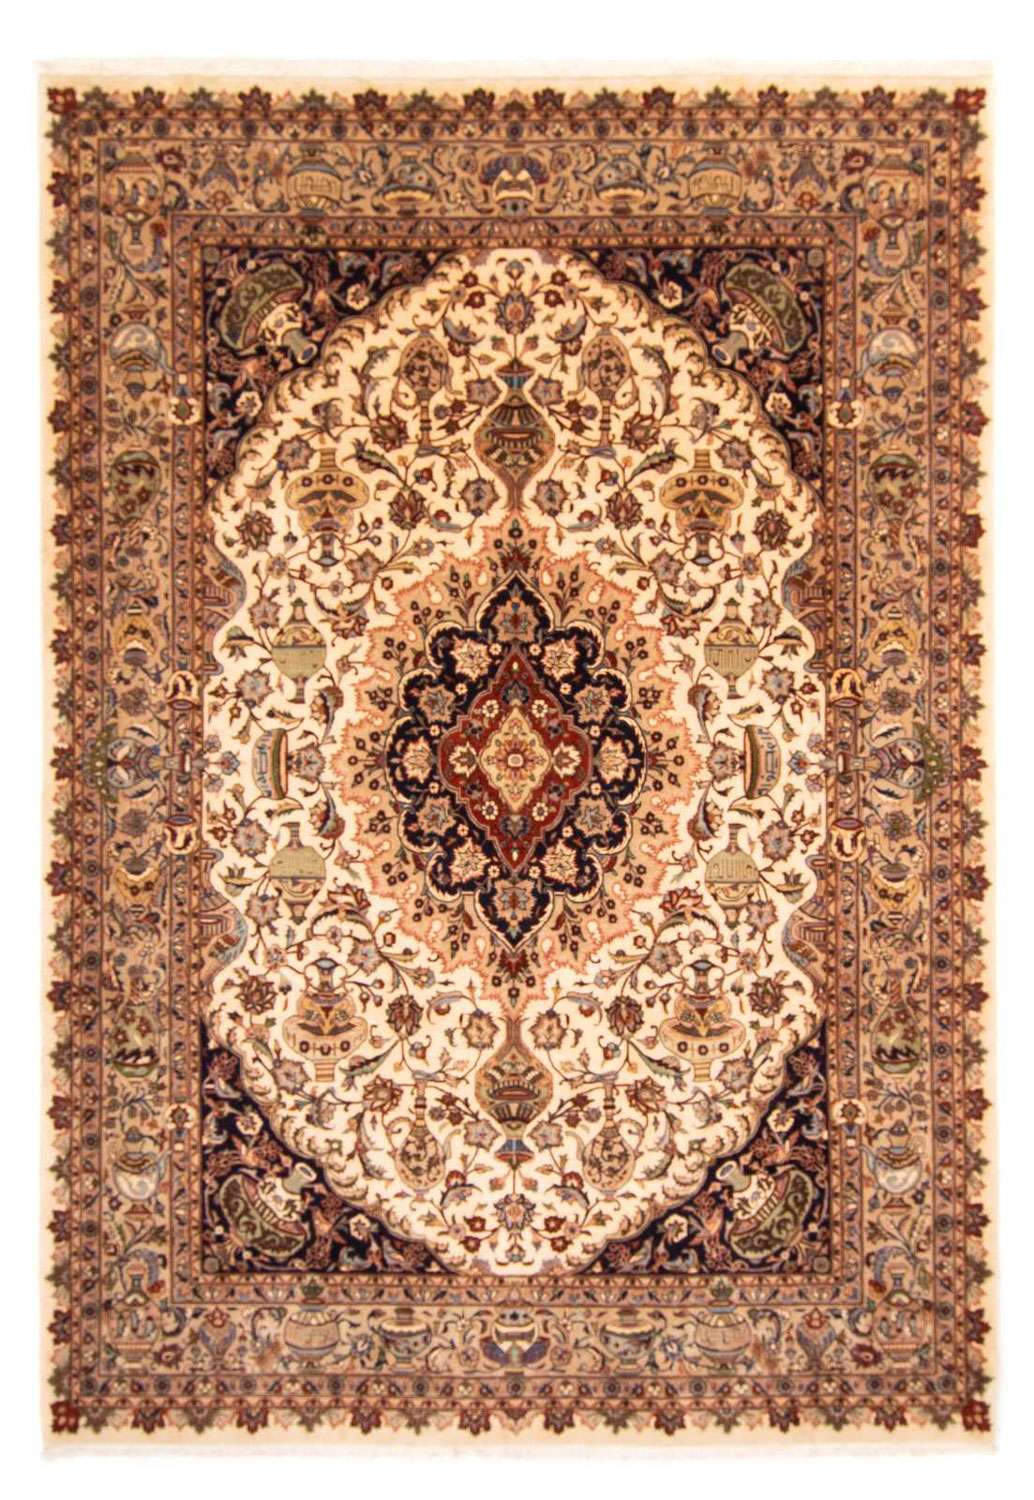 Tapis persan - Classique - 343 x 249 cm - beige